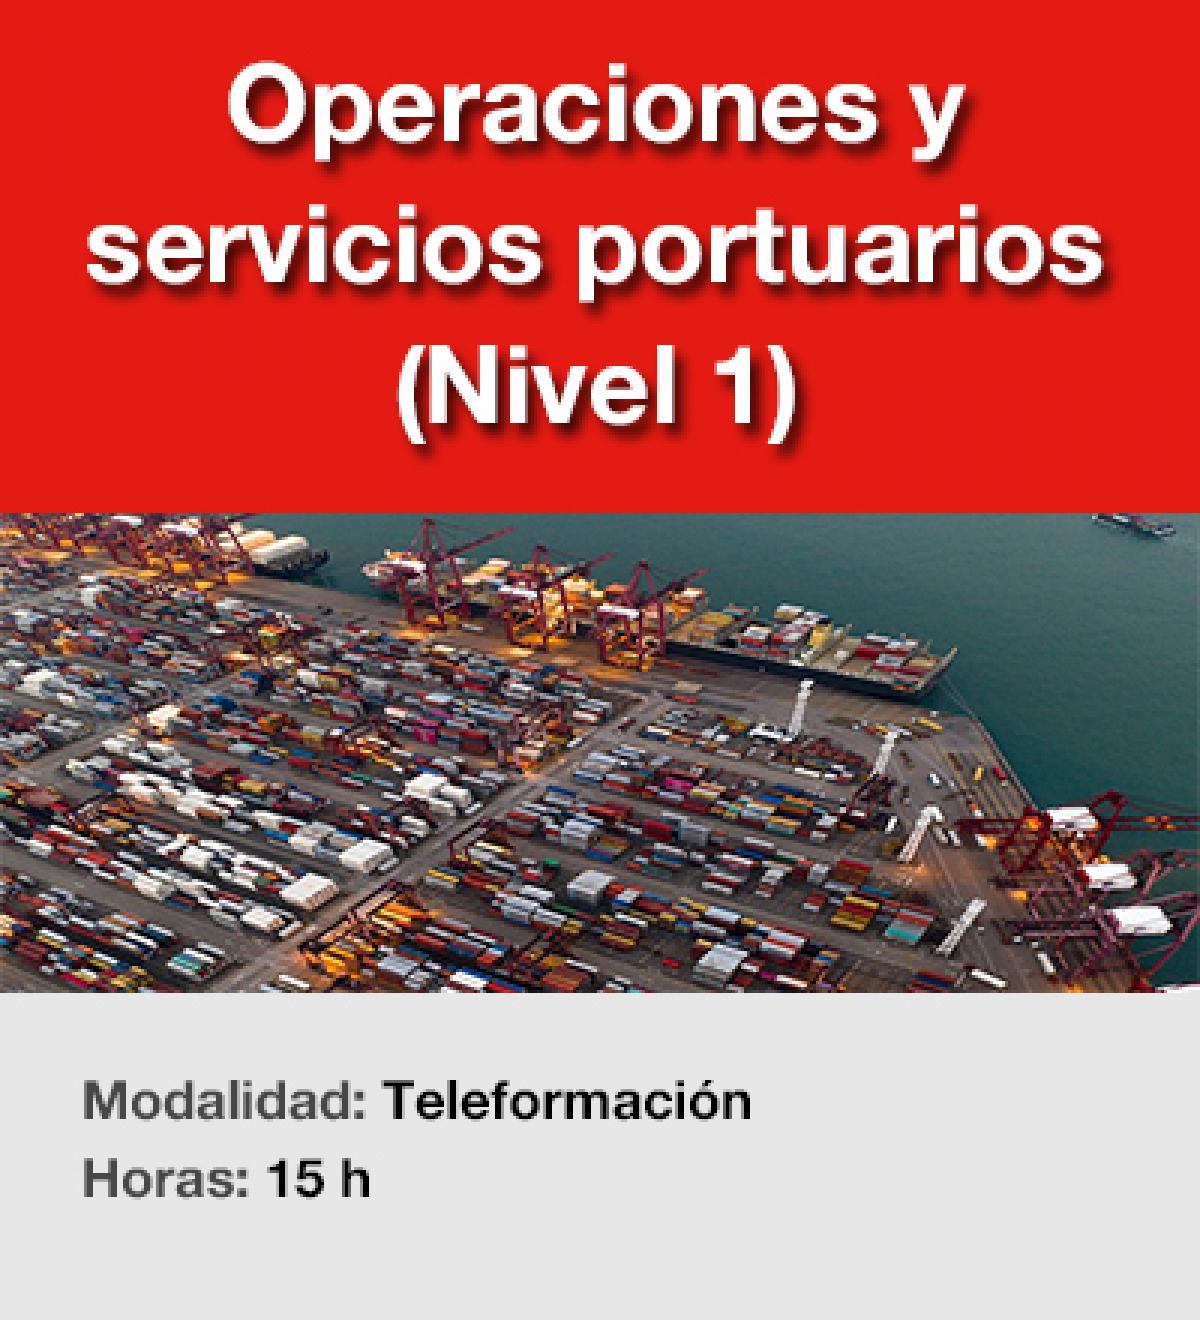 Operaciones y servicios portuarios (Nivel 1)